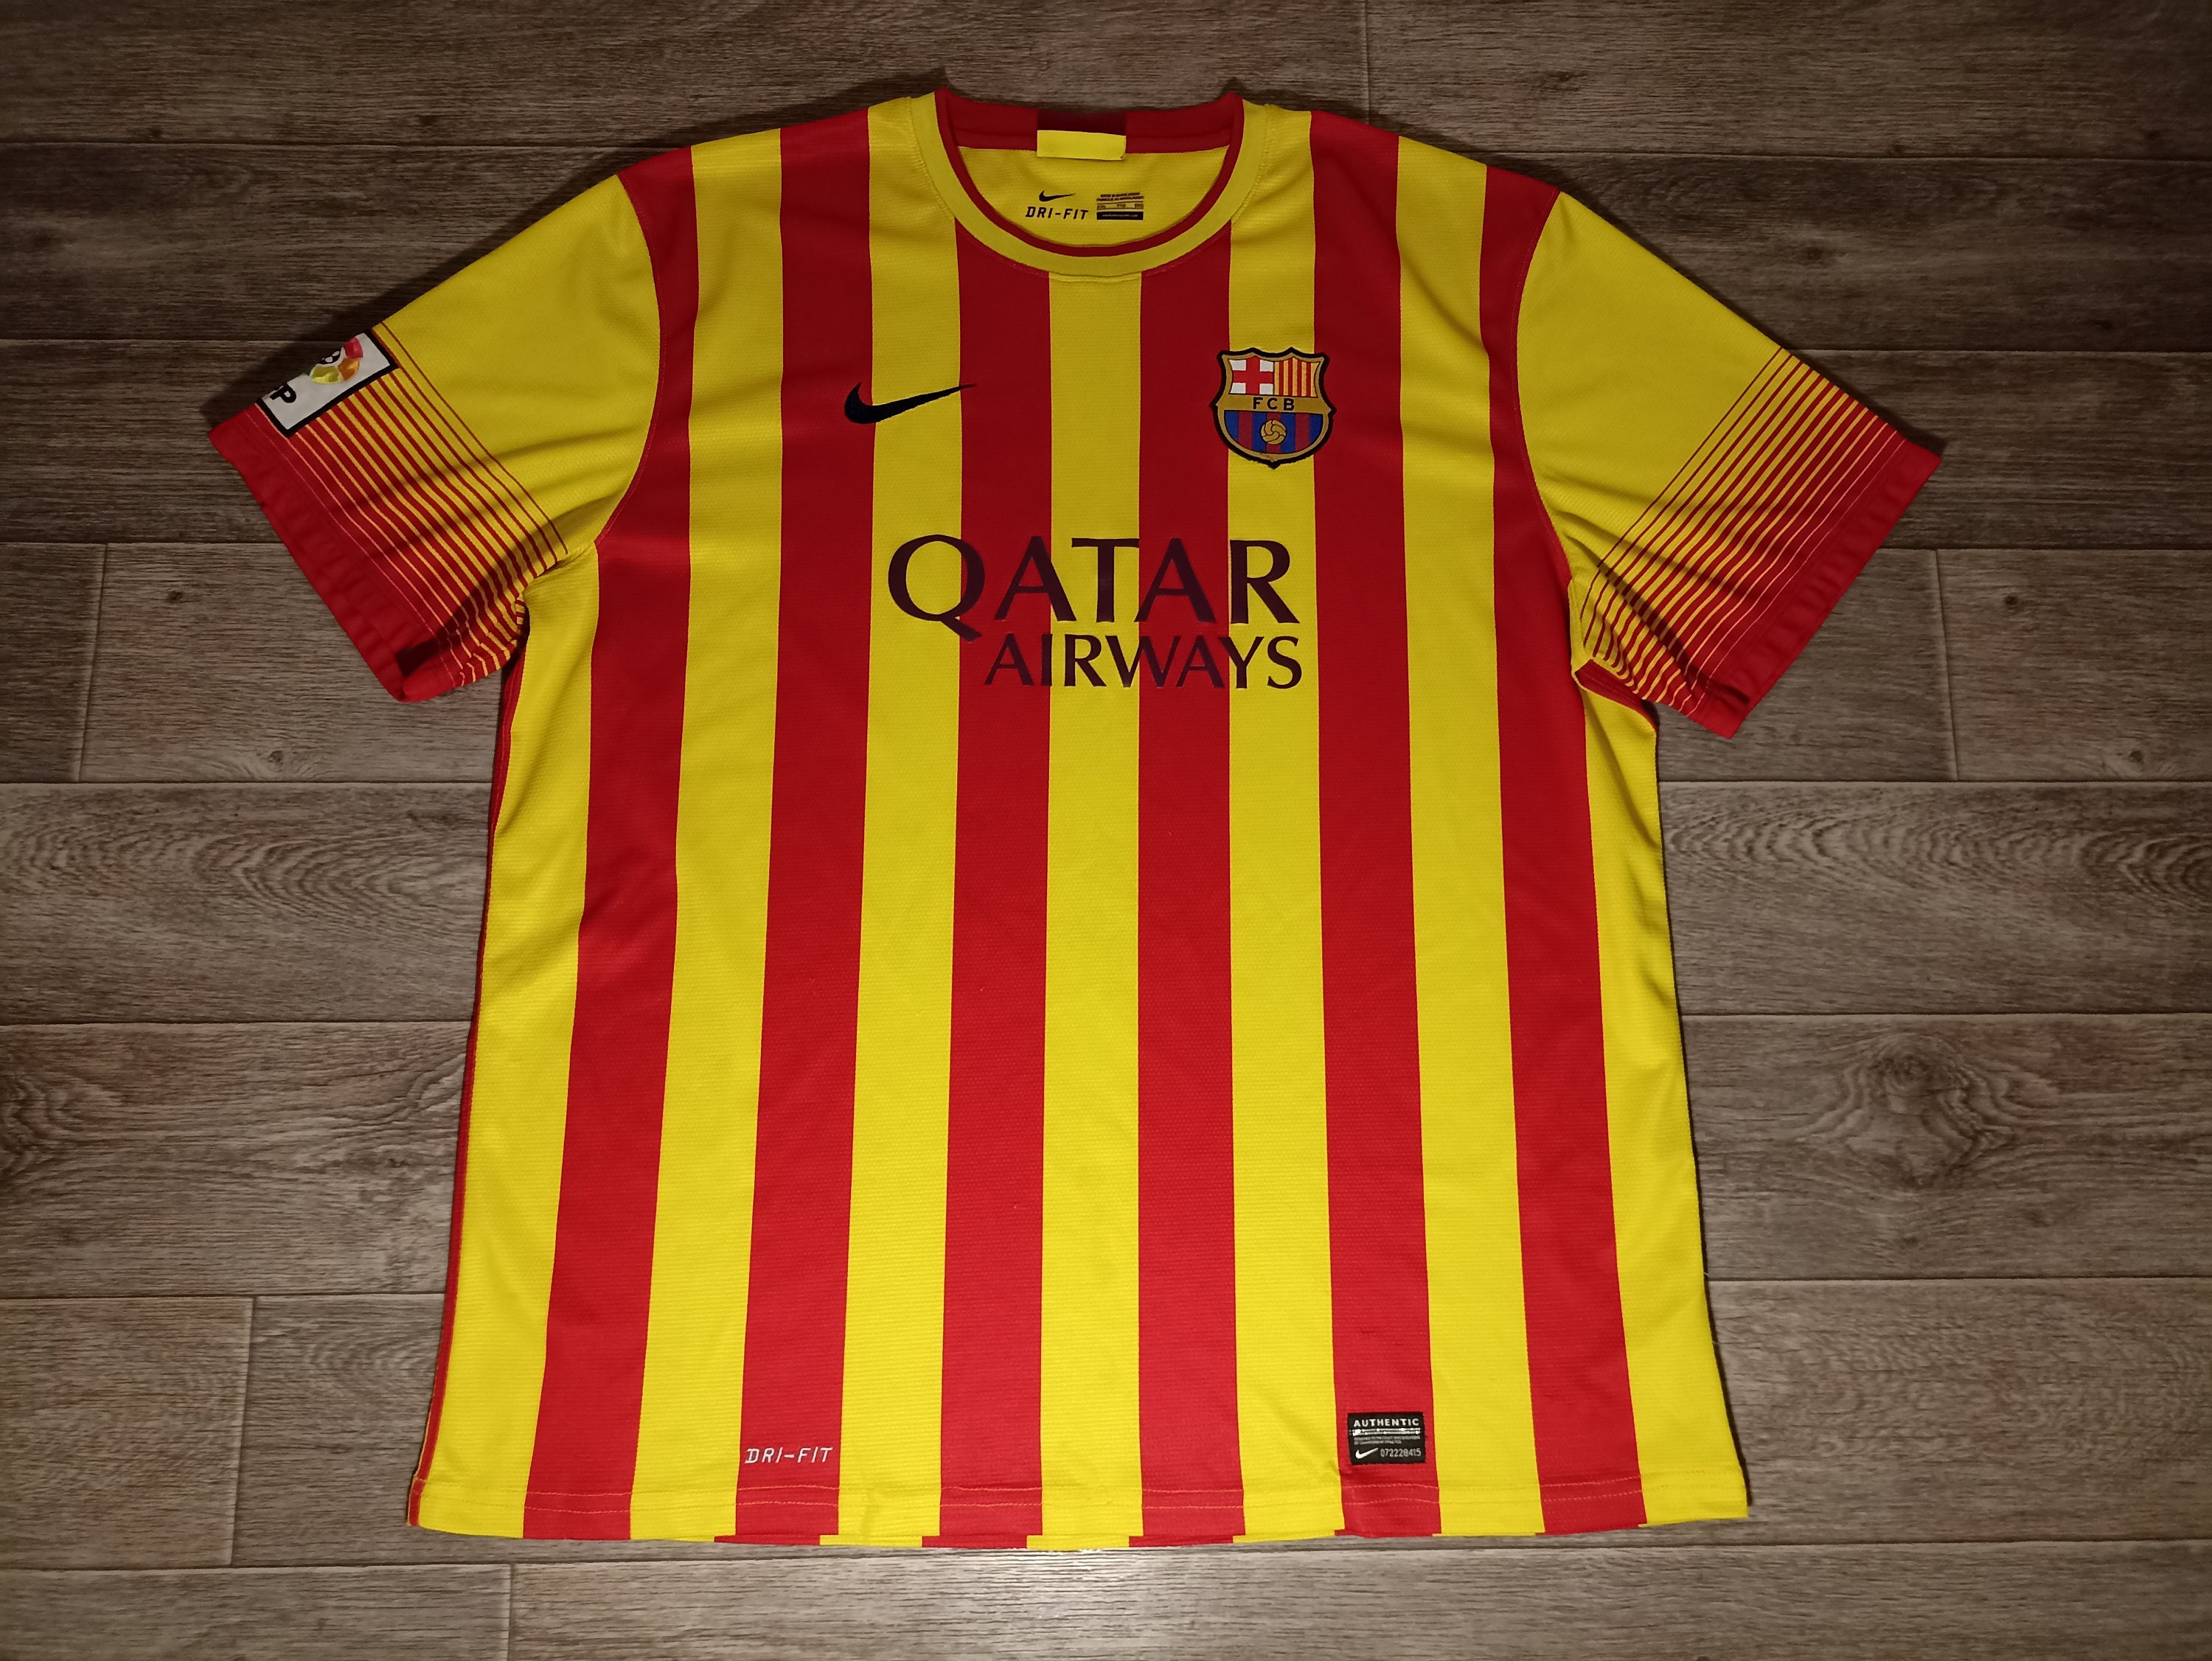 Barcelona Air Traffic Men's Nike Soccer T-Shirt.